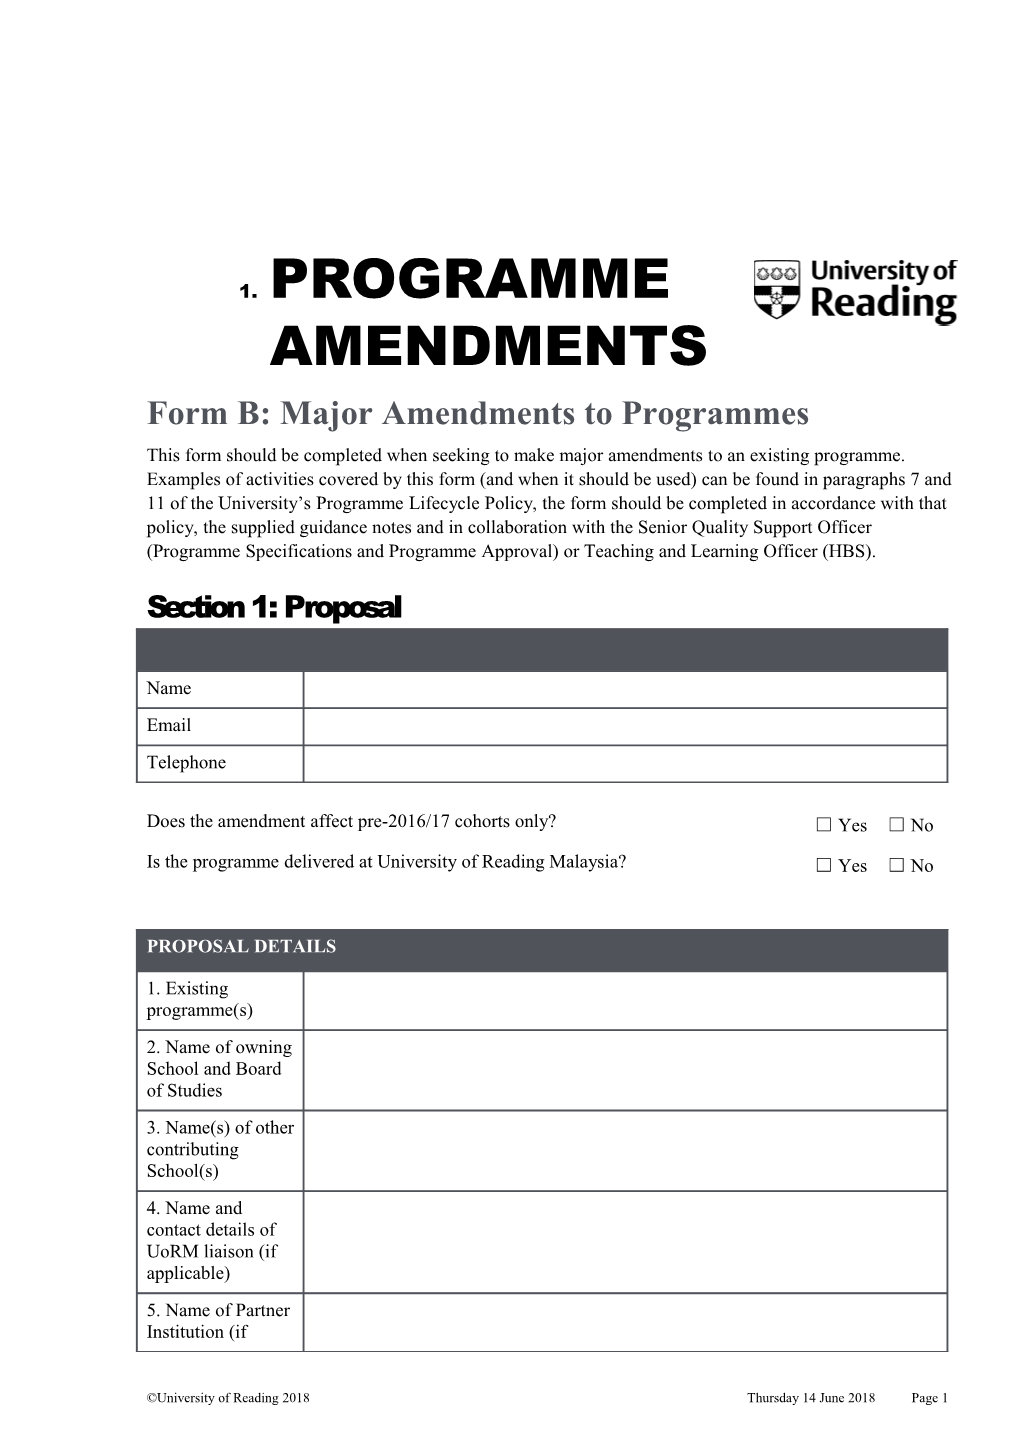 New Programmes: Form A